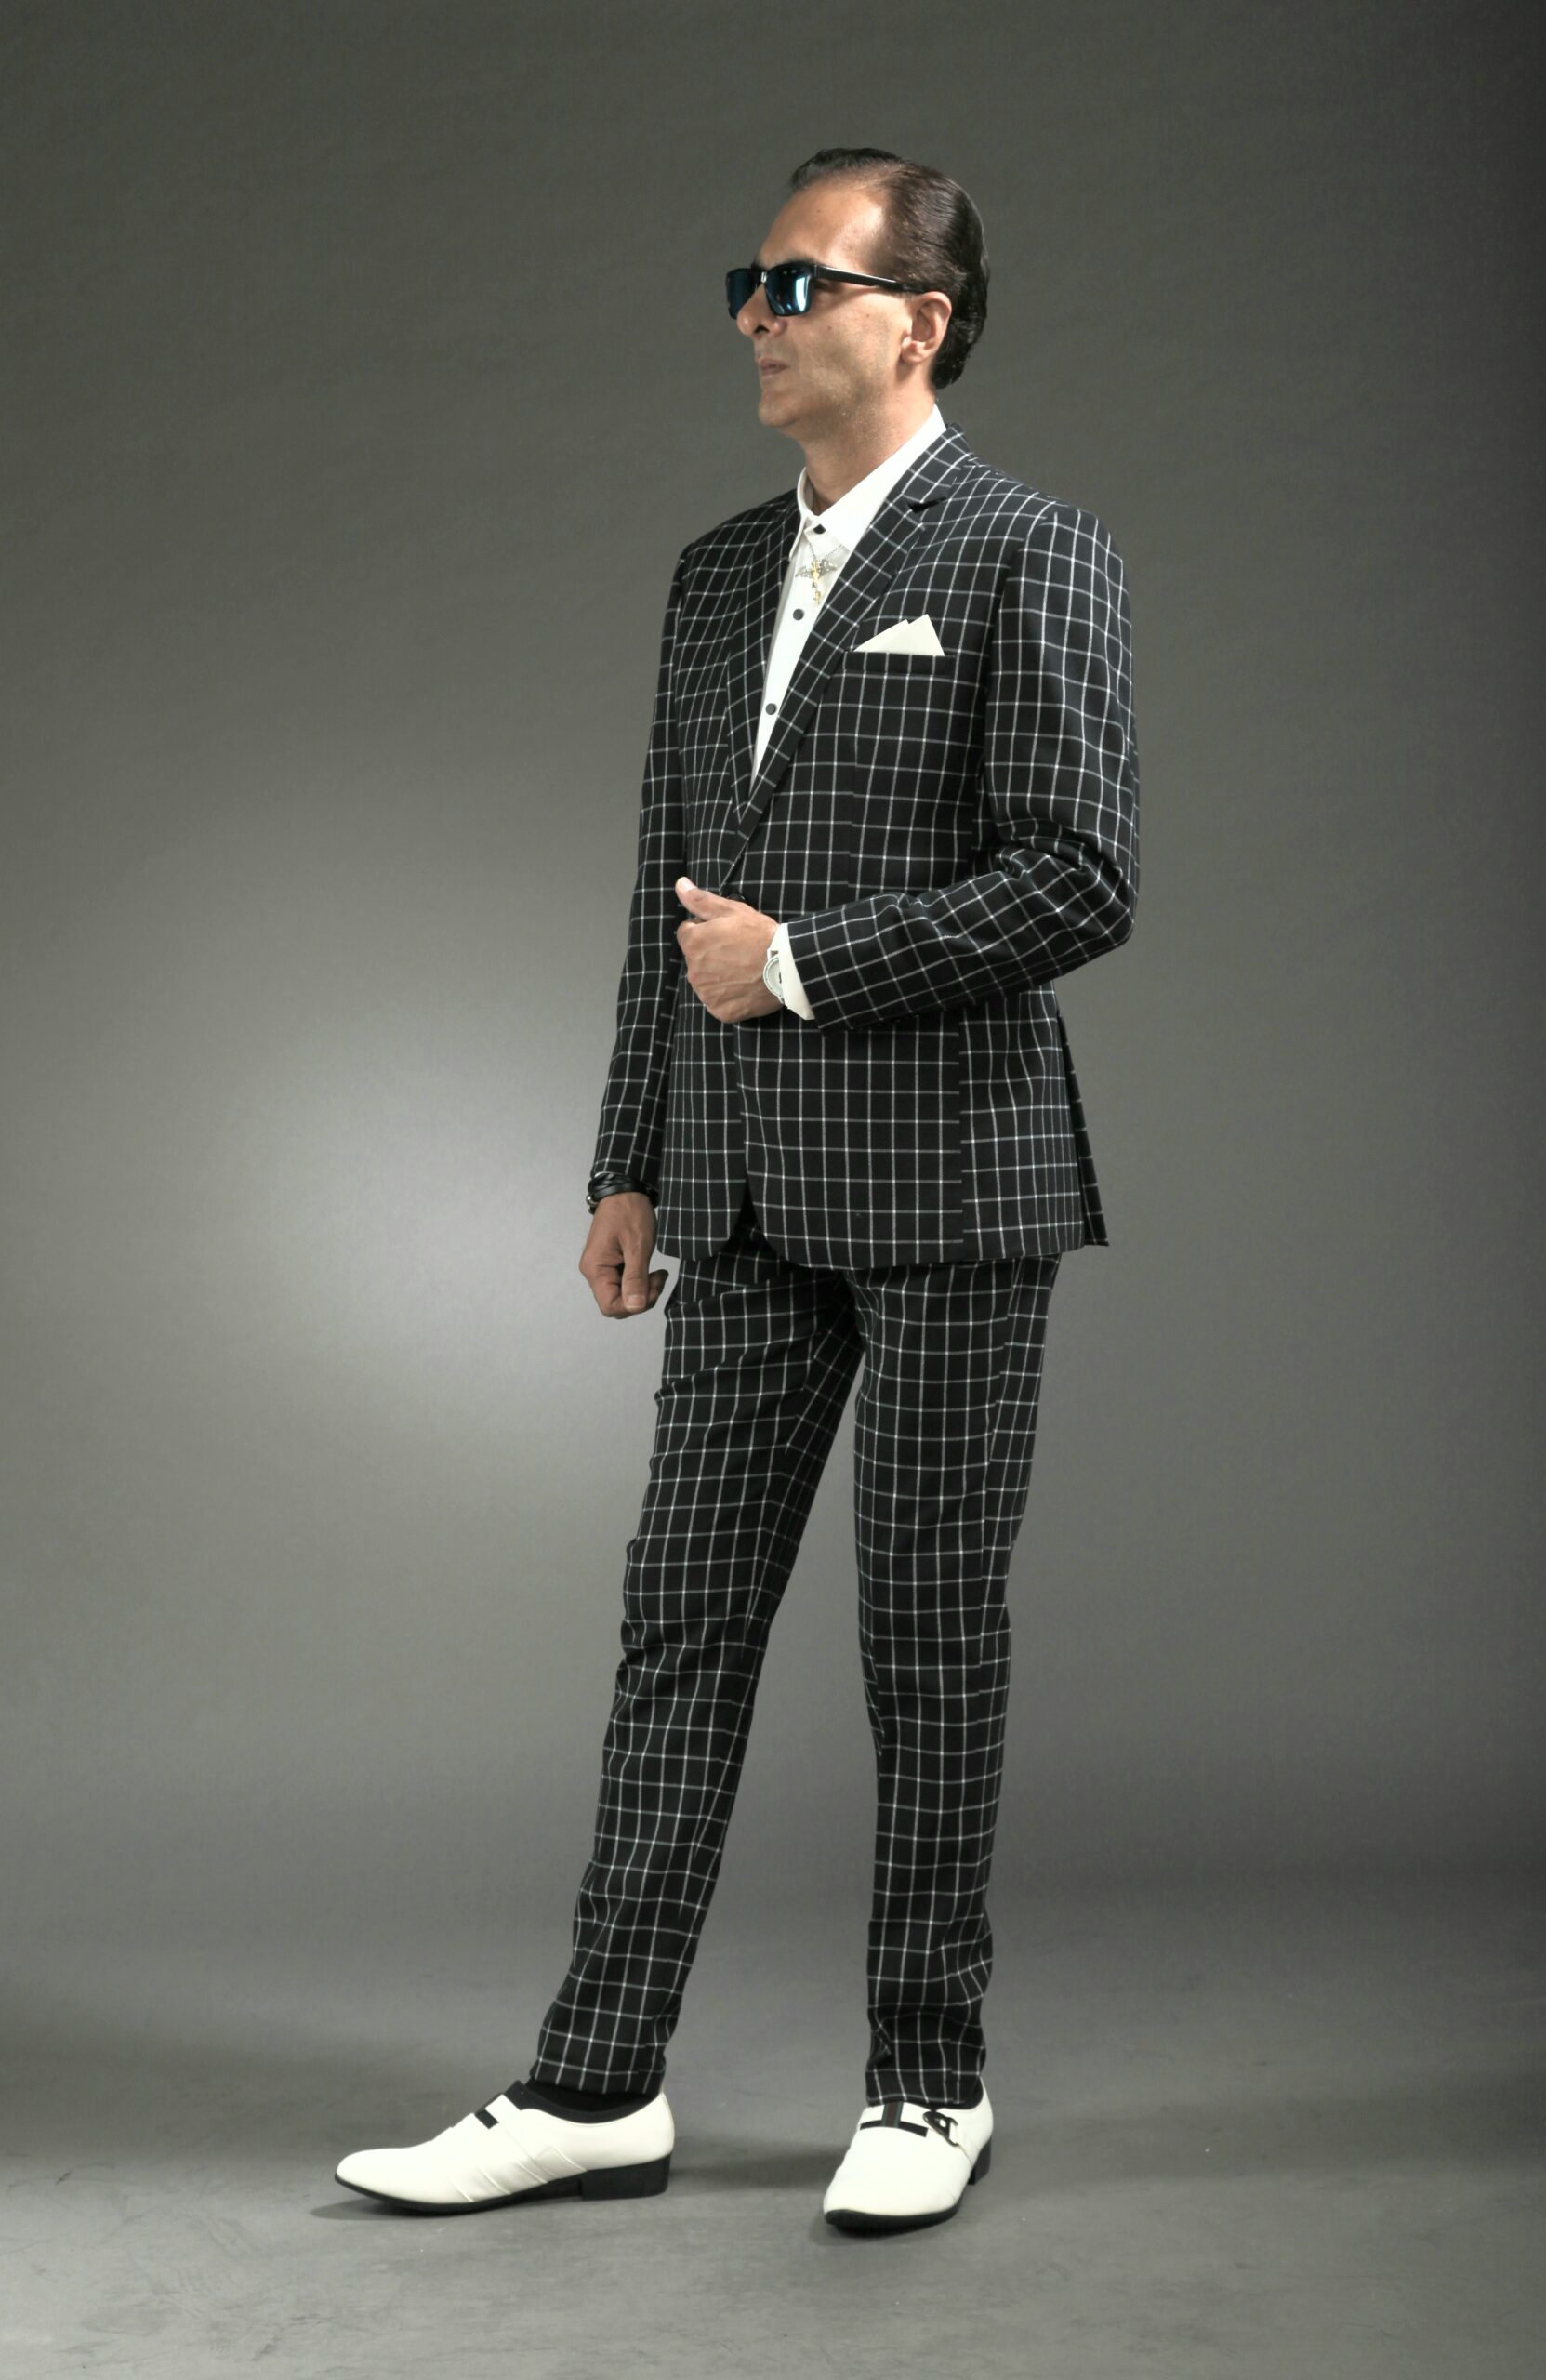 MST-5008-02-rent_rental_hire_tuxedo_suit_black_tie_suit_designer_suits_shop_tailor_tailors_singapore_wedding